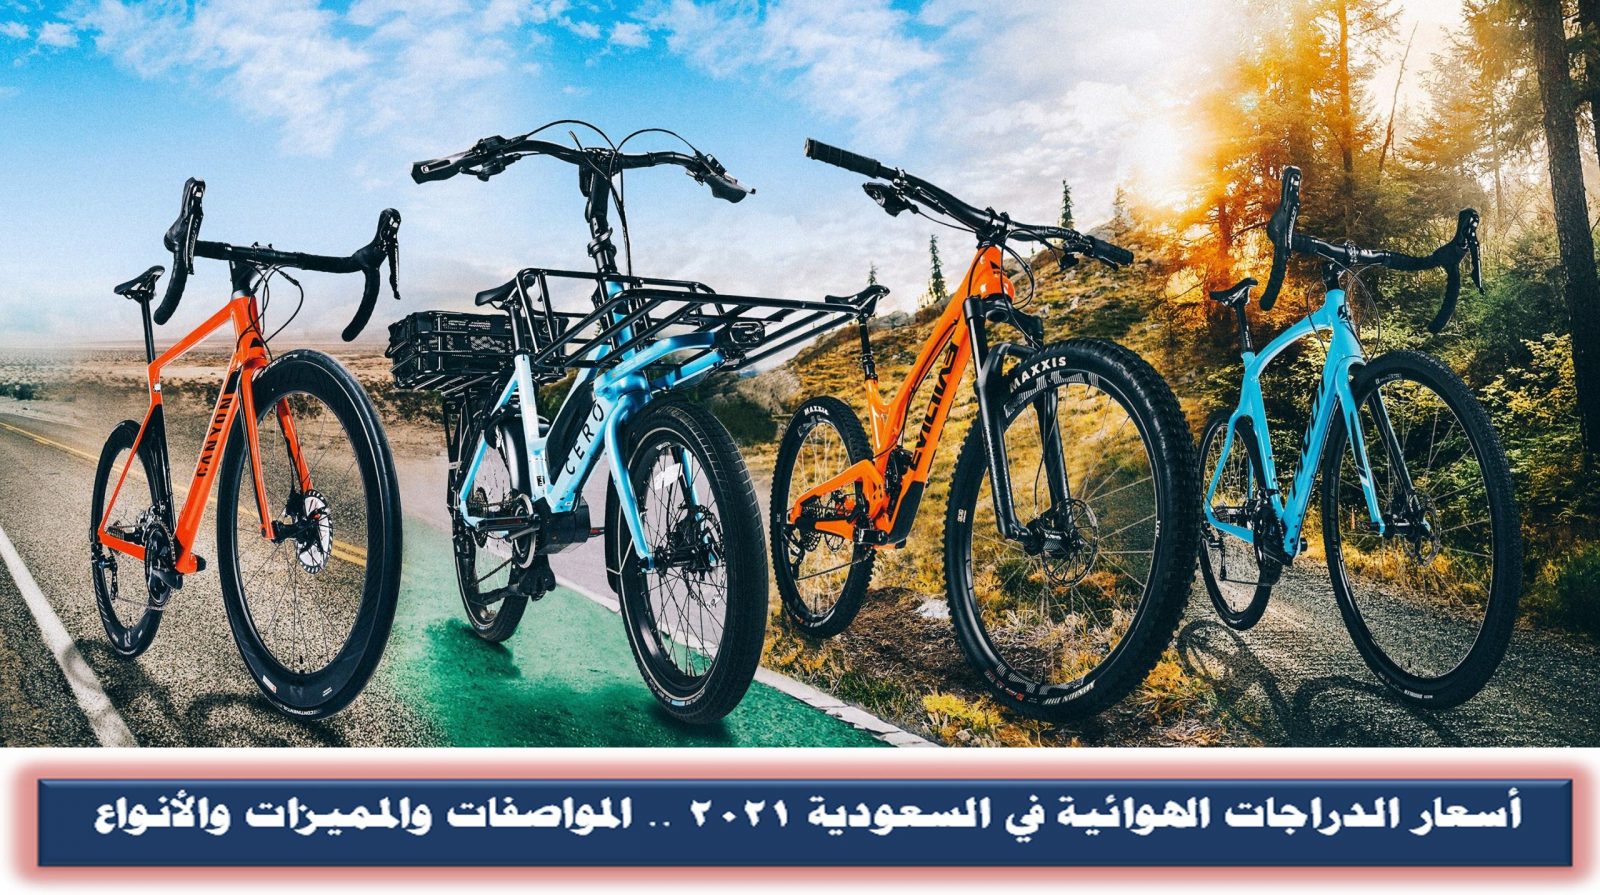 أسعار الدراجات الهوائية في السعودية 2021 .. المواصفات والمميزات والأنواع